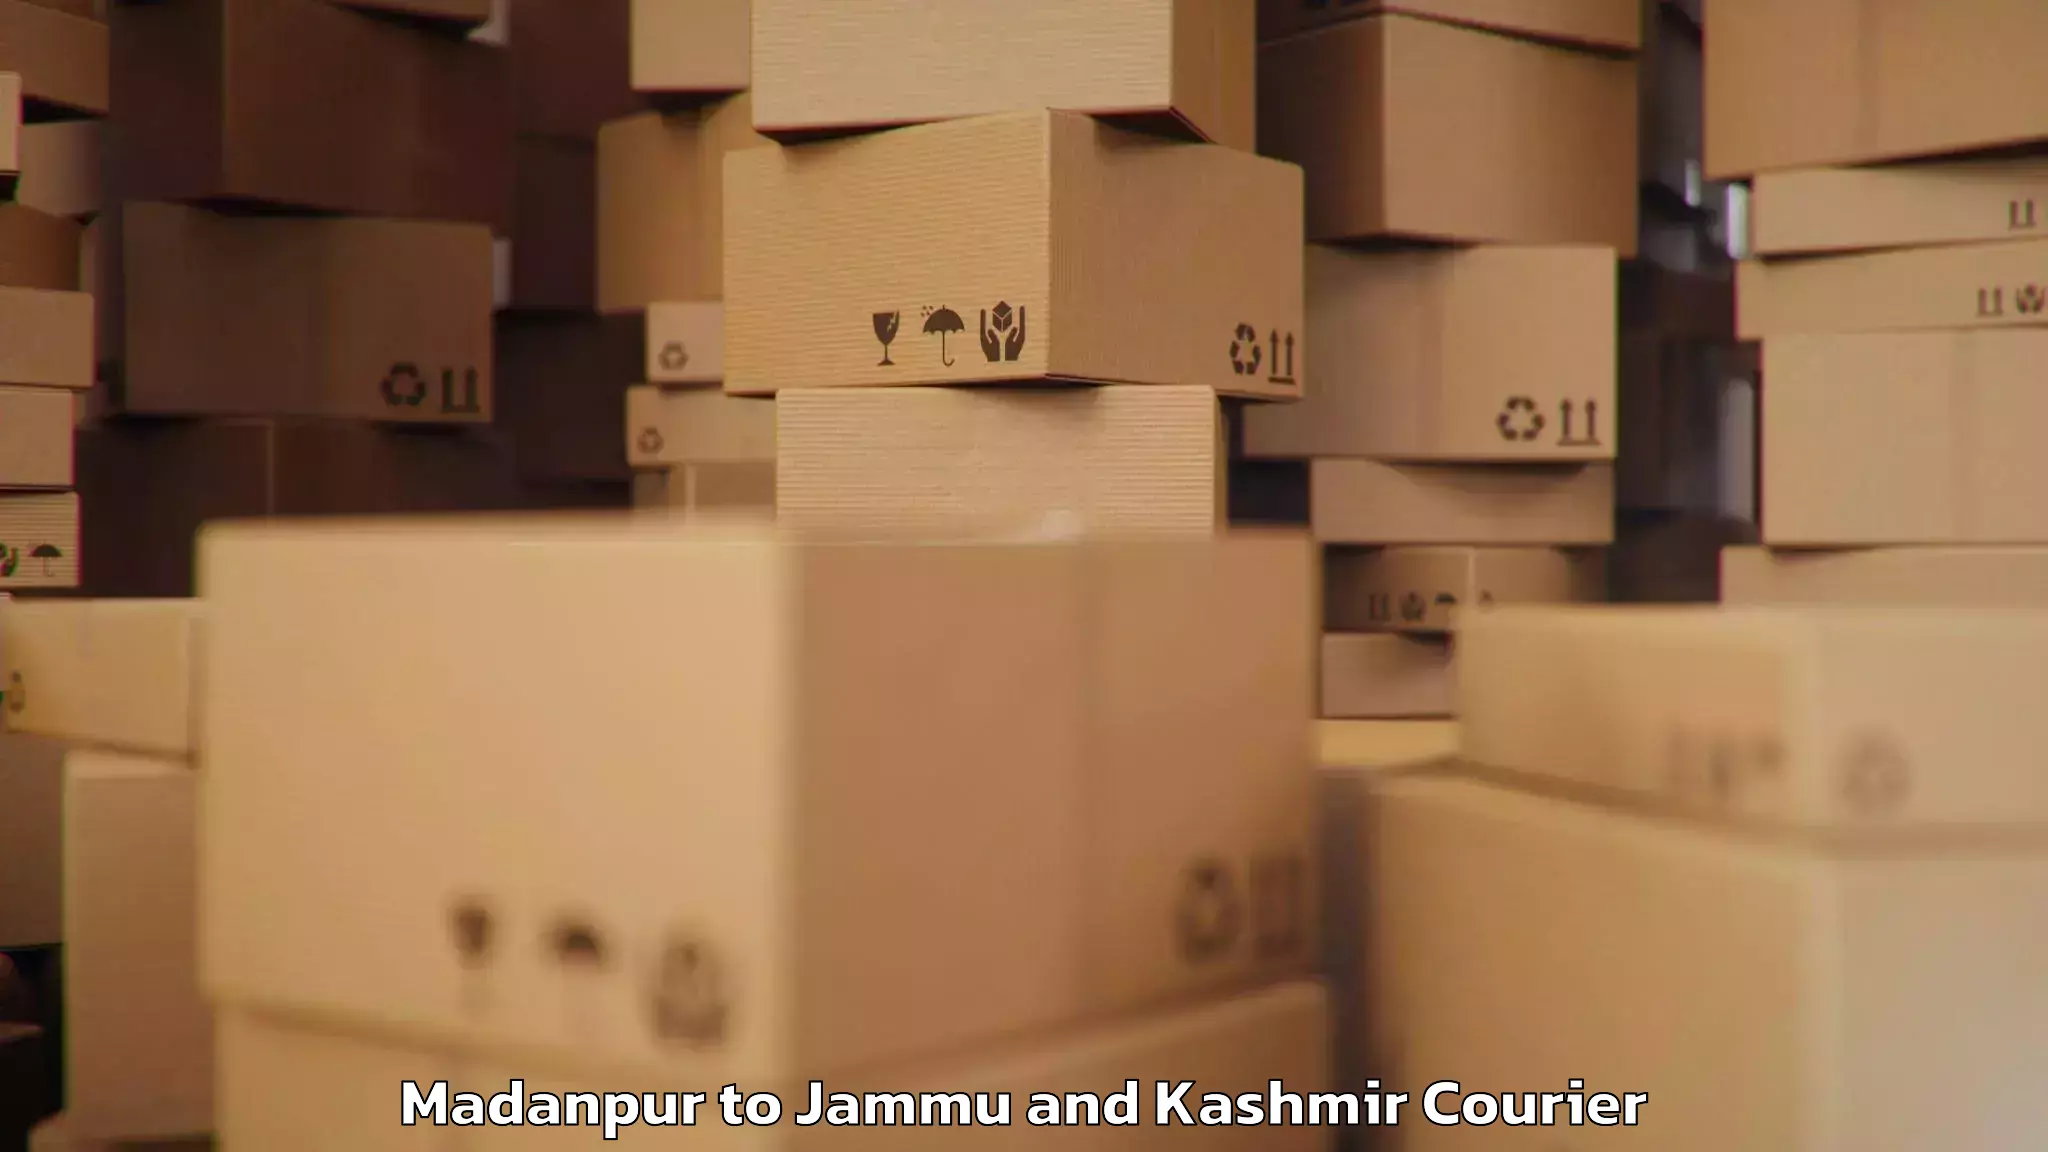 Luggage delivery app Madanpur to Srinagar Kashmir